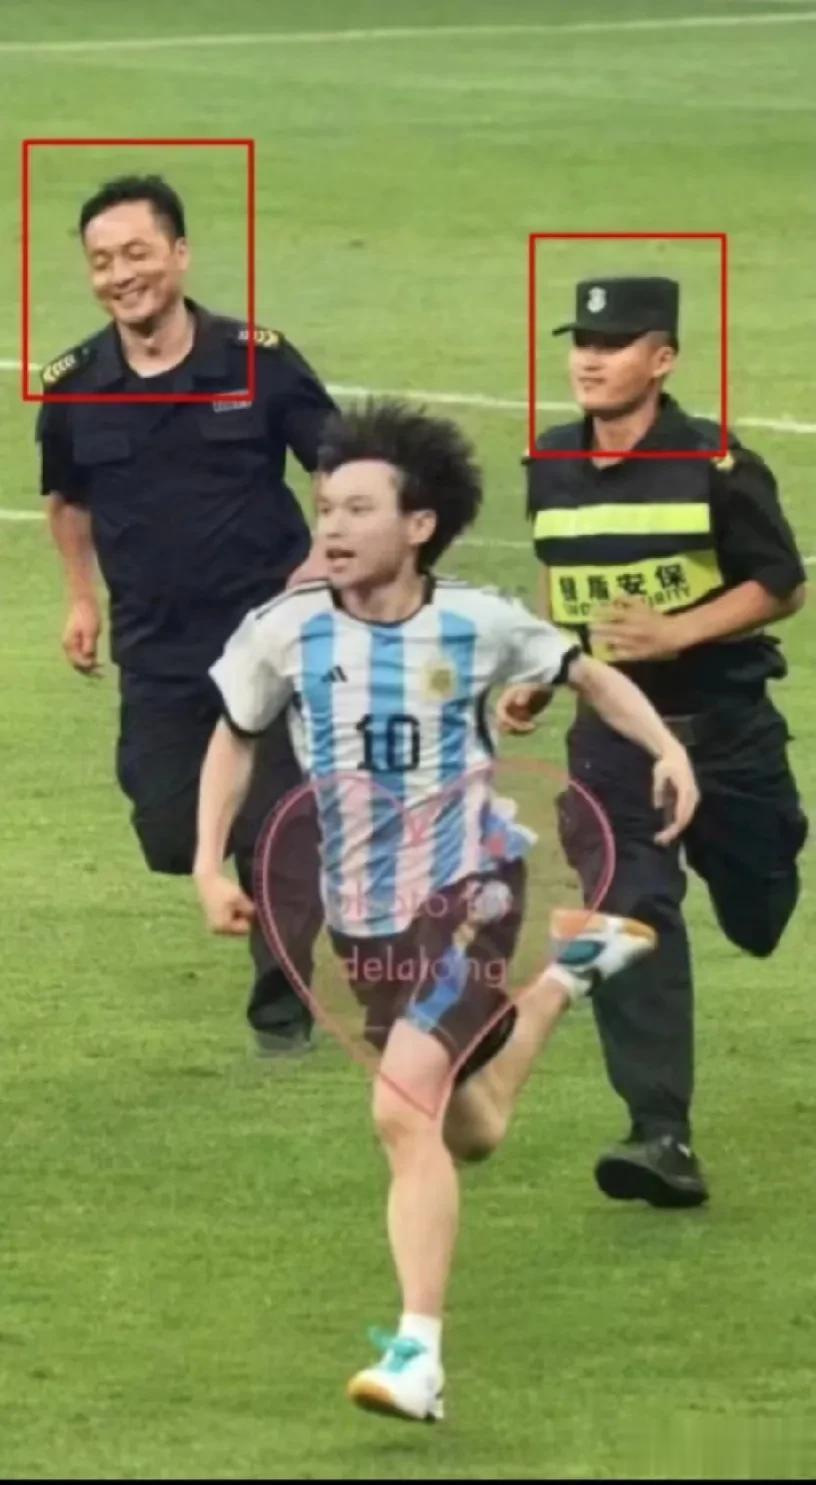  三个宝宝快乐地奔跑 ，把梅西都逗乐了，作为阿根廷球迷，有生之年能抱一下球王，这